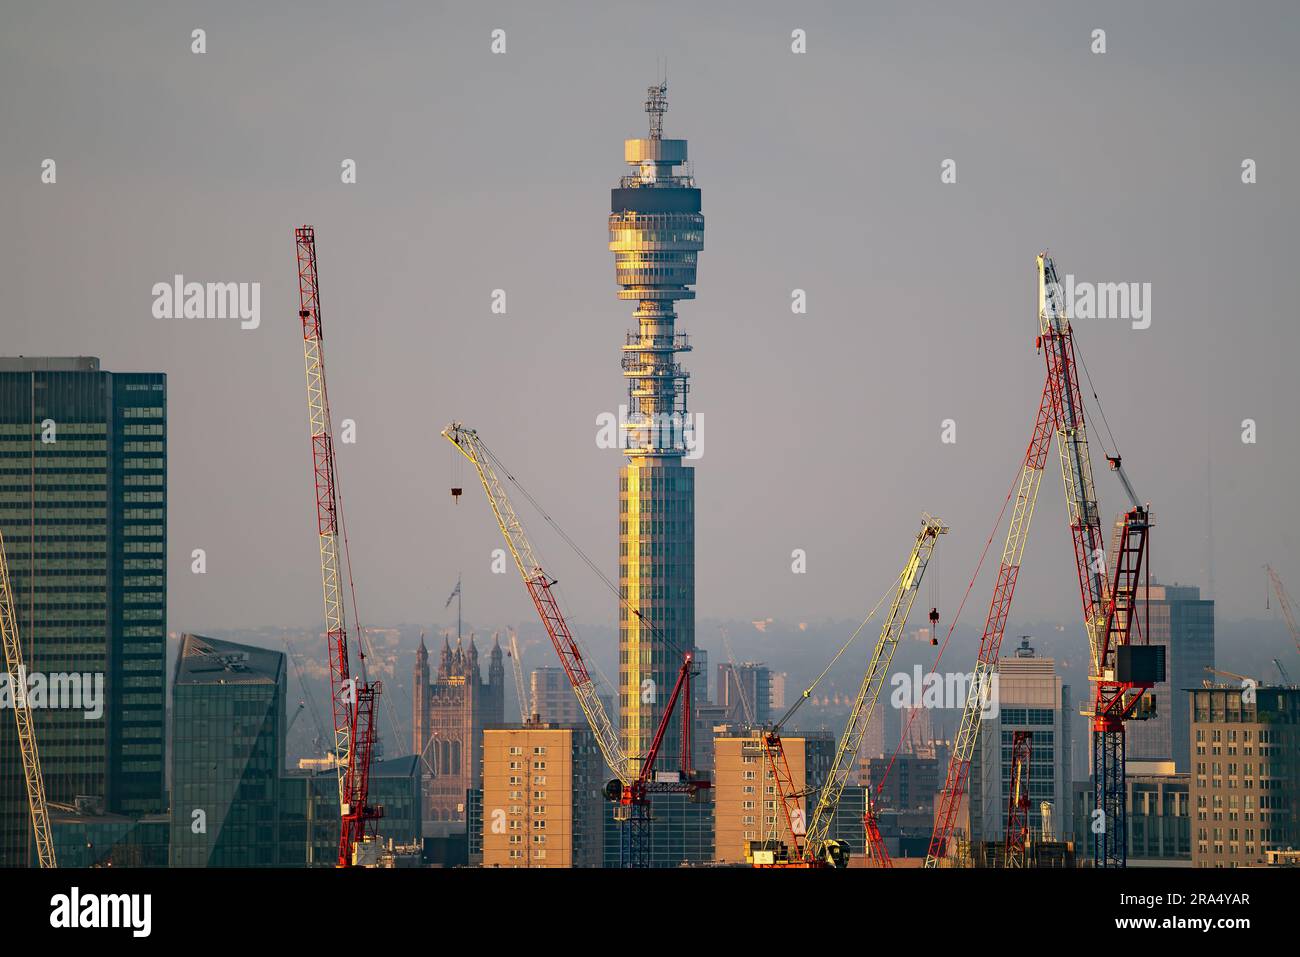 Incredibile paesaggio cittadino di Londra con torre BT e gru a torre questa foto è stata scattata dalla collina Parliement, che è il punto più alto del Regno Unito Foto Stock